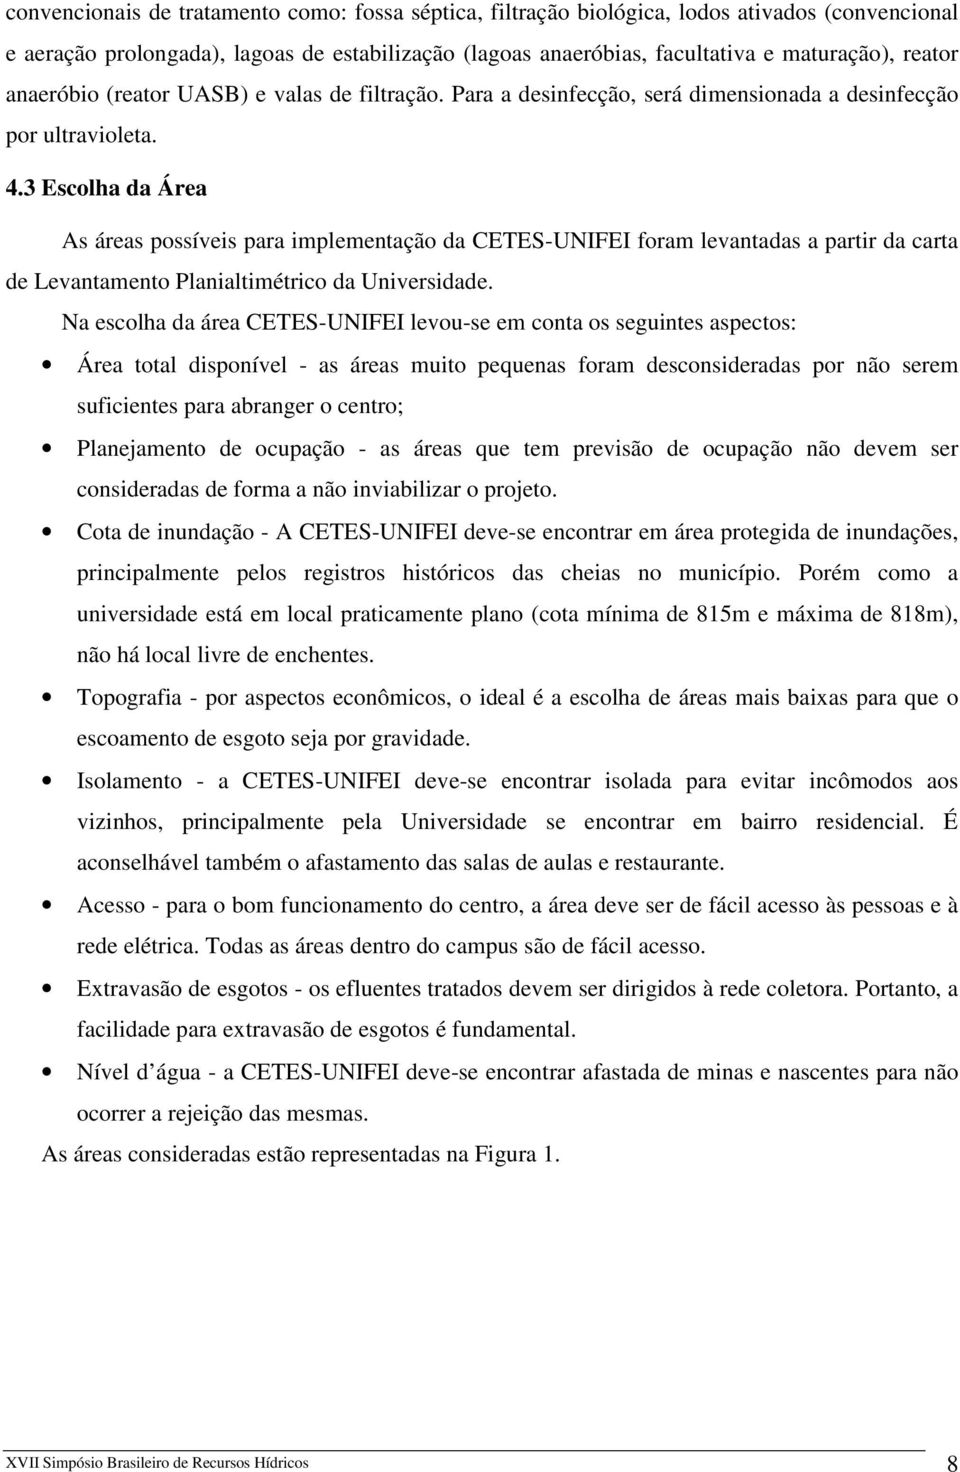 3 Escolha da Área As áreas possíveis para implementação da CETES-UNIFEI foram levantadas a partir da carta de Levantamento Planialtimétrico da Universidade.